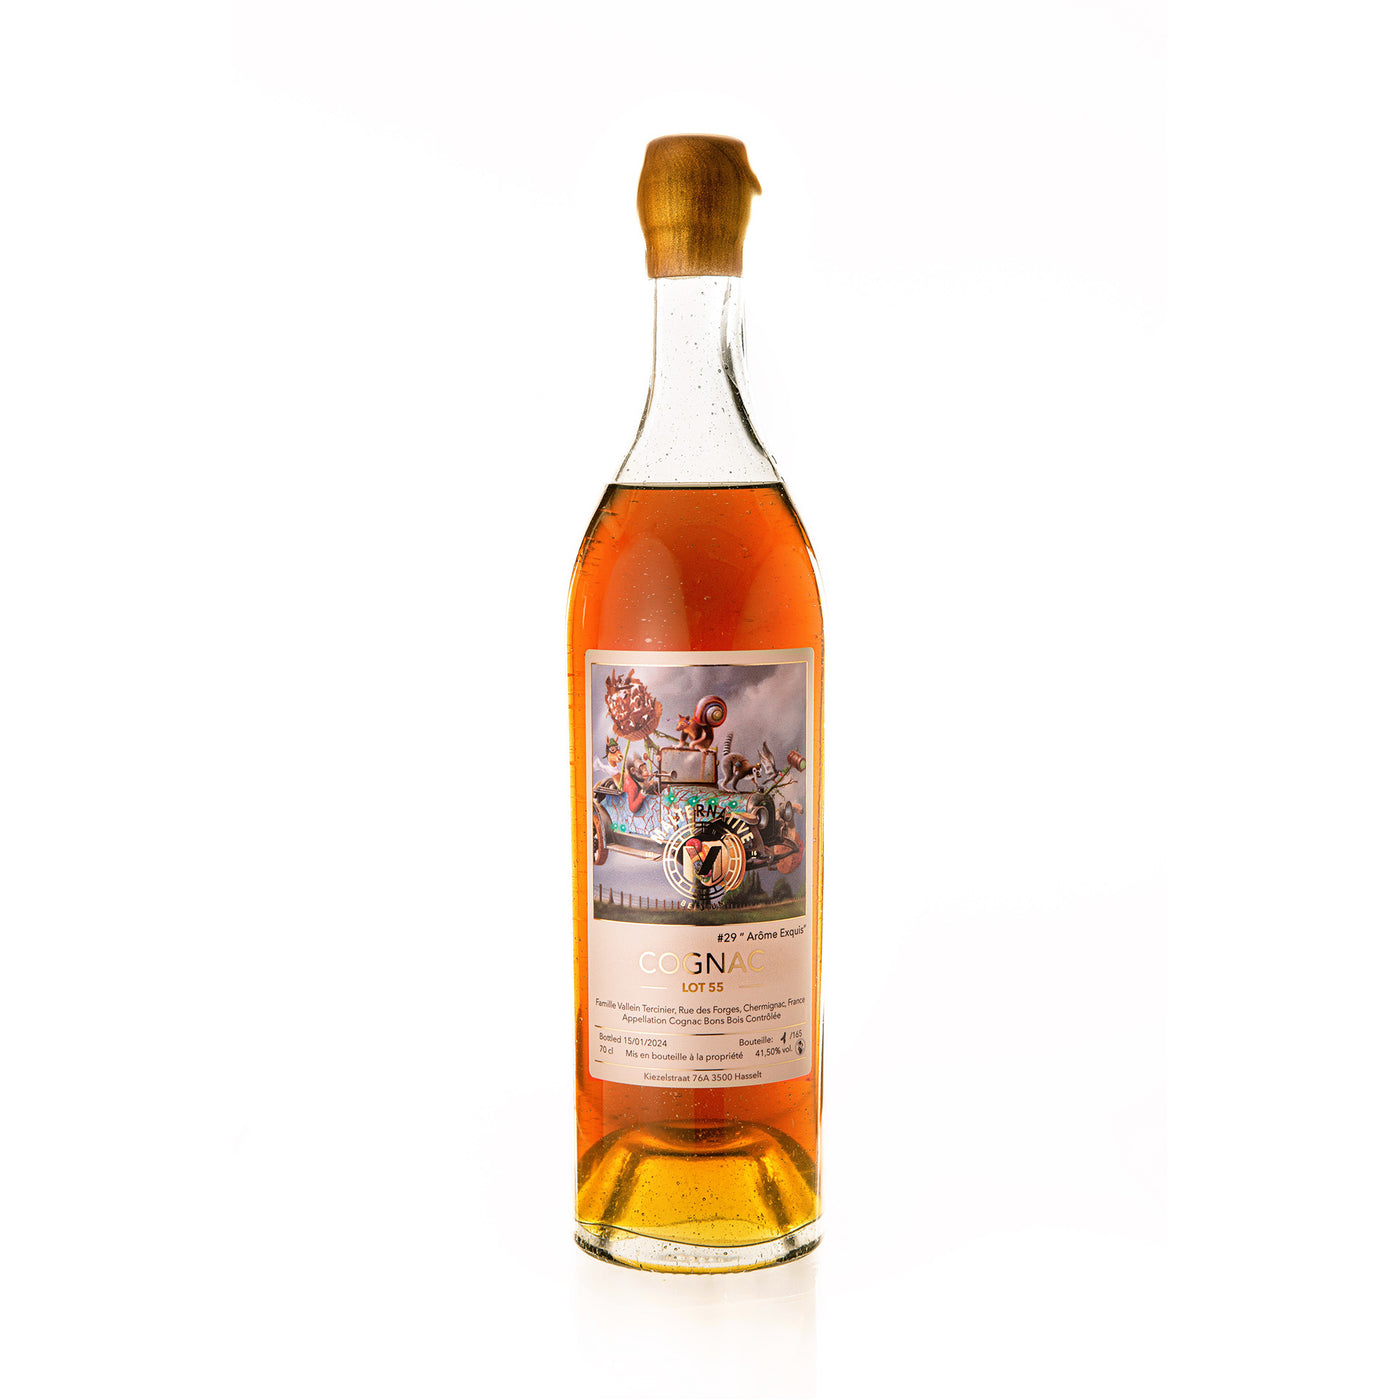 Malternative Belgium Cognac #29 Arôme Exquis (Lot 55)